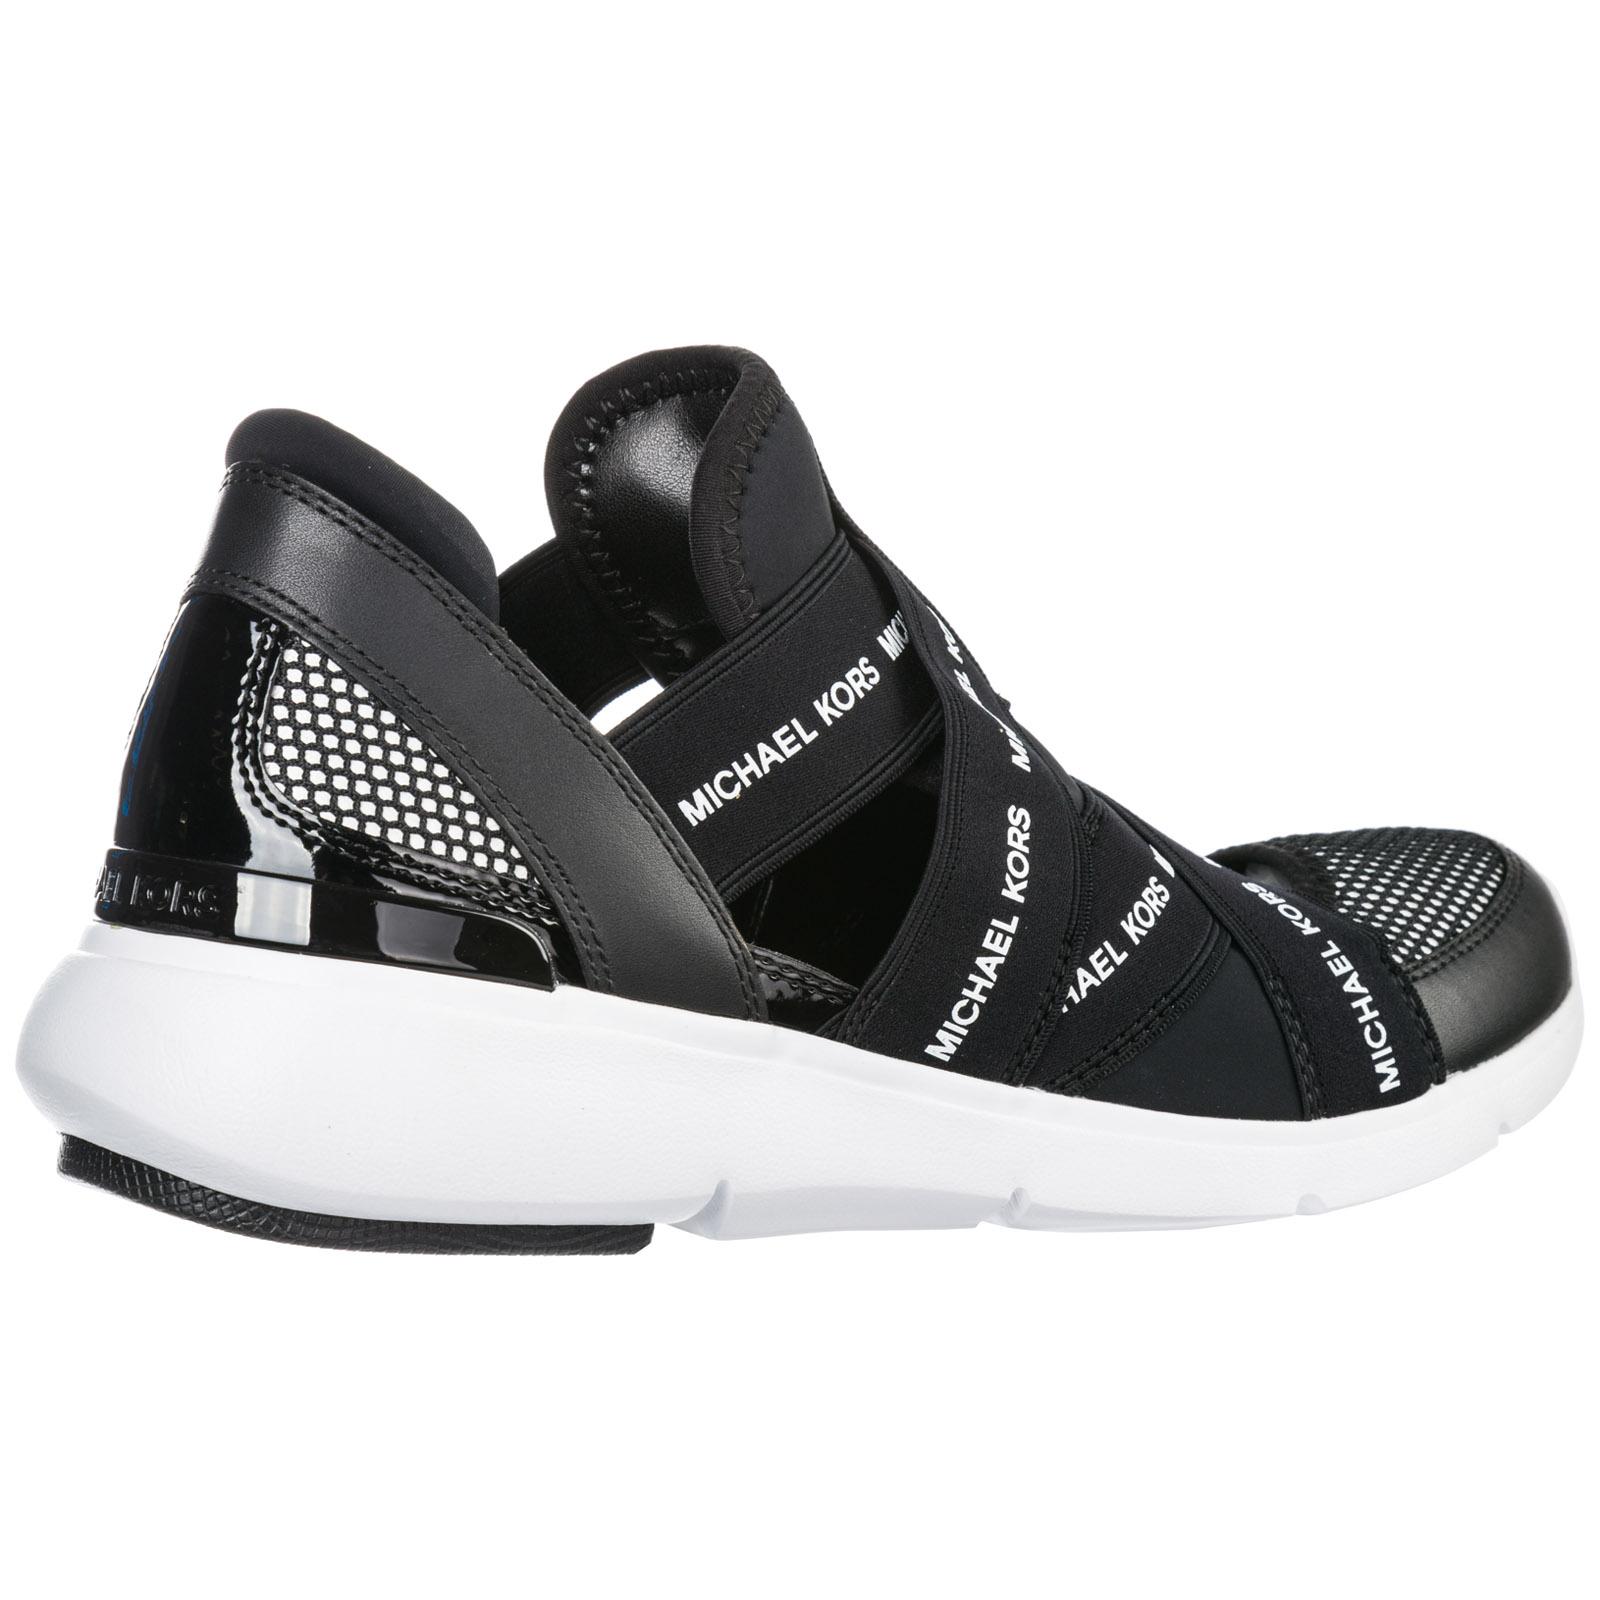 Michael Kors Schuhe Sneaker Hotsell, 57% OFF | www.markiesminigolf.com